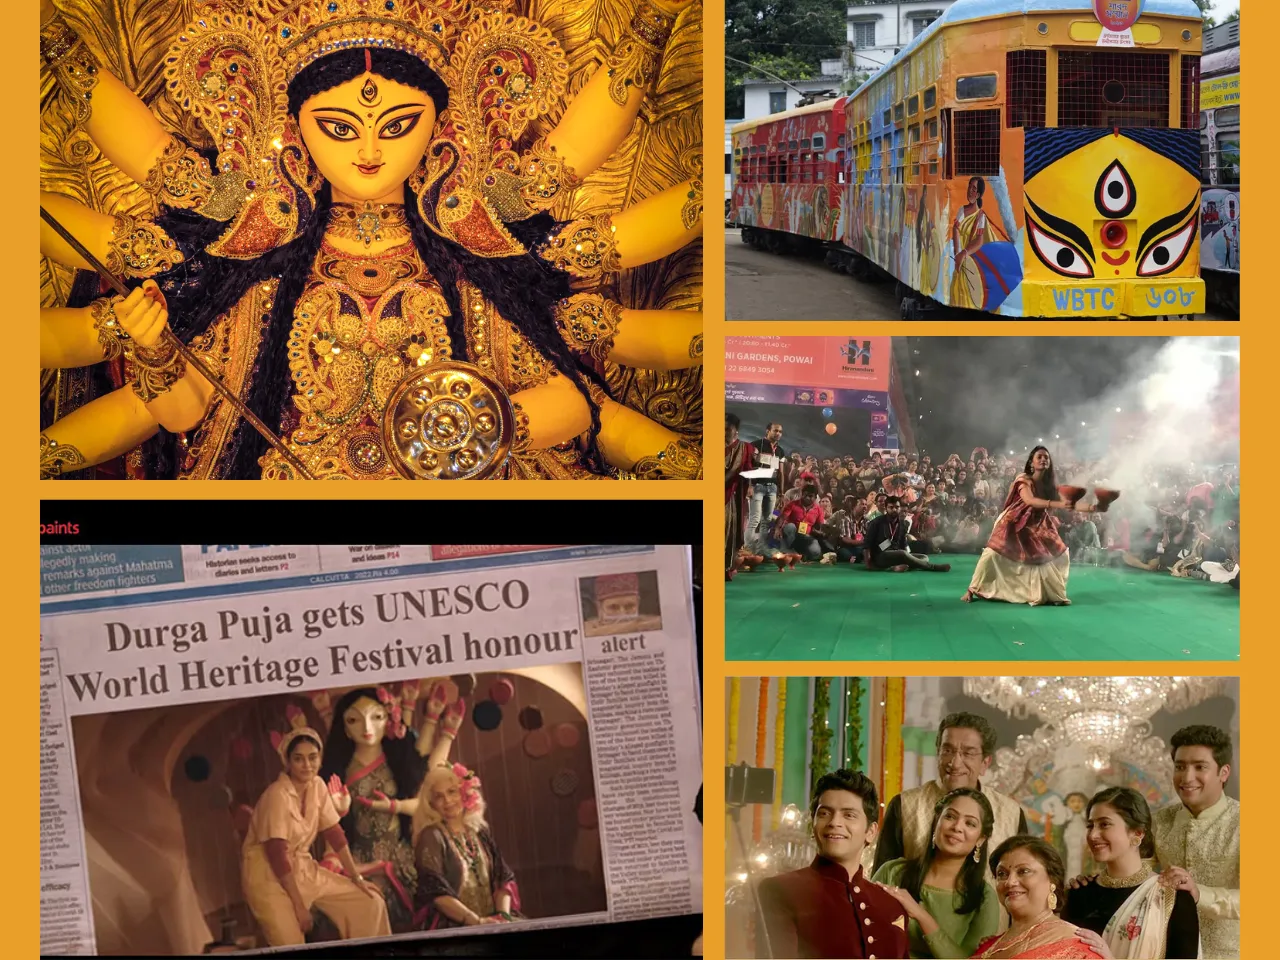 Durga Pujo marketing